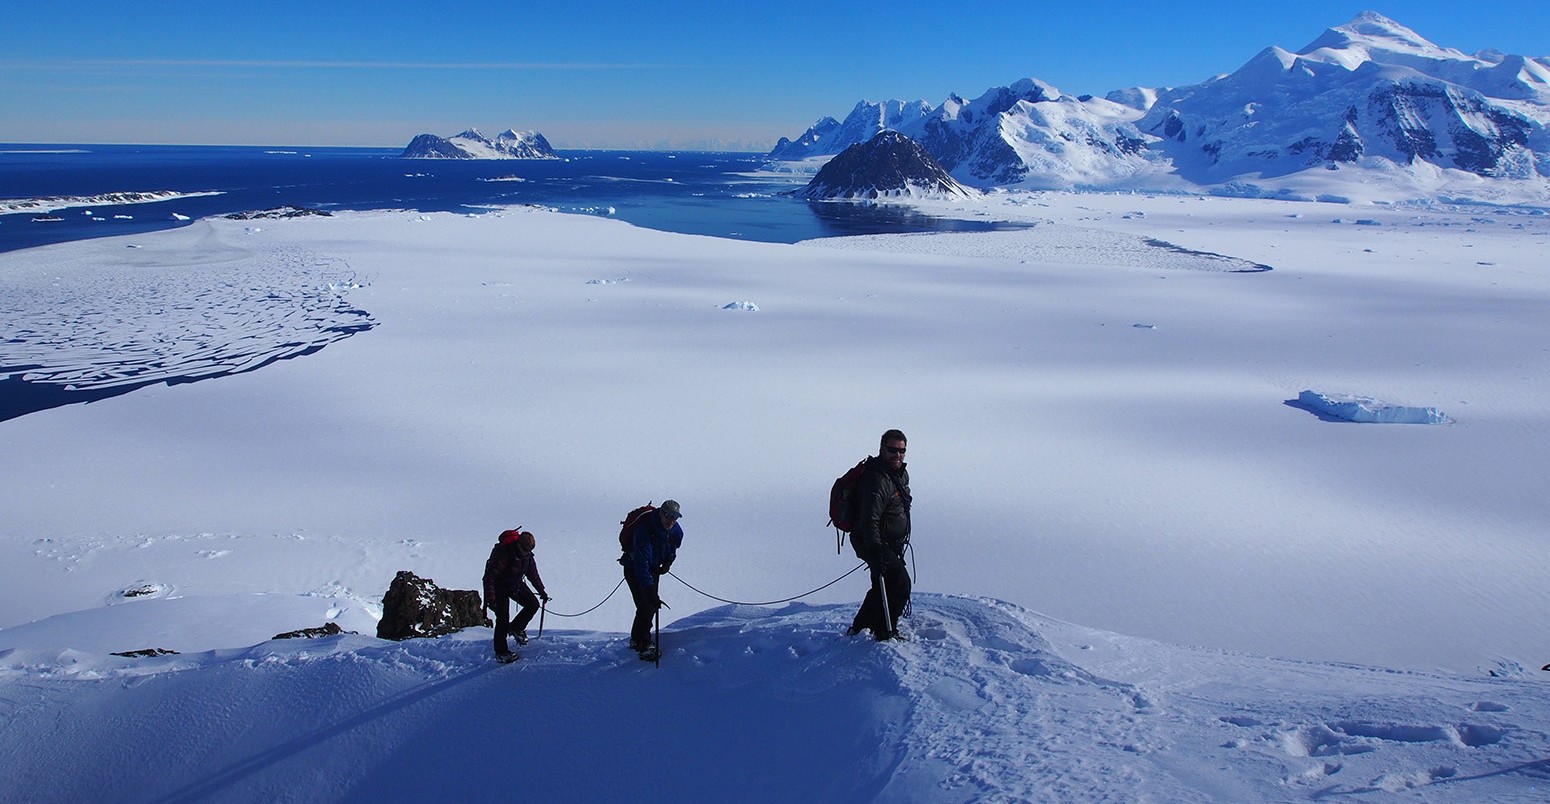 Researchers walking up a snowy ridge in a polar region overlooking the ocean